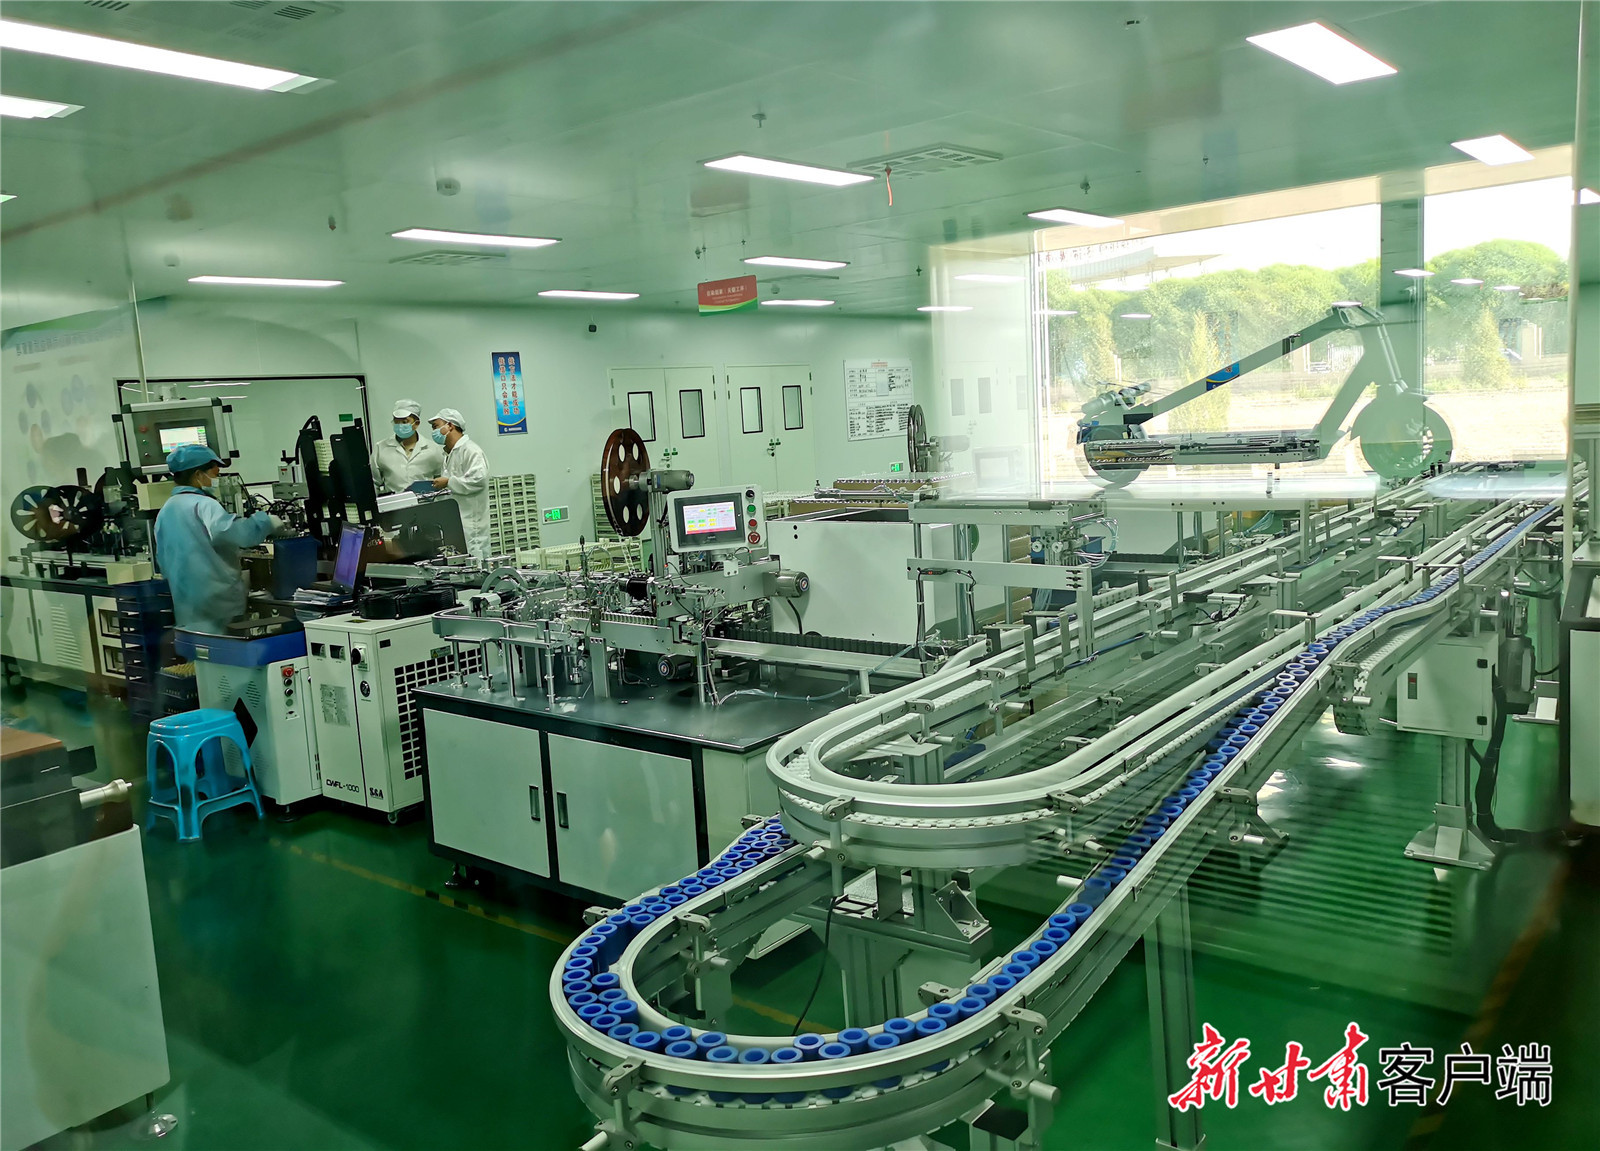 甘肃金宏翔新能源有限公司高倍率18650圆柱形锂离子电池生产线